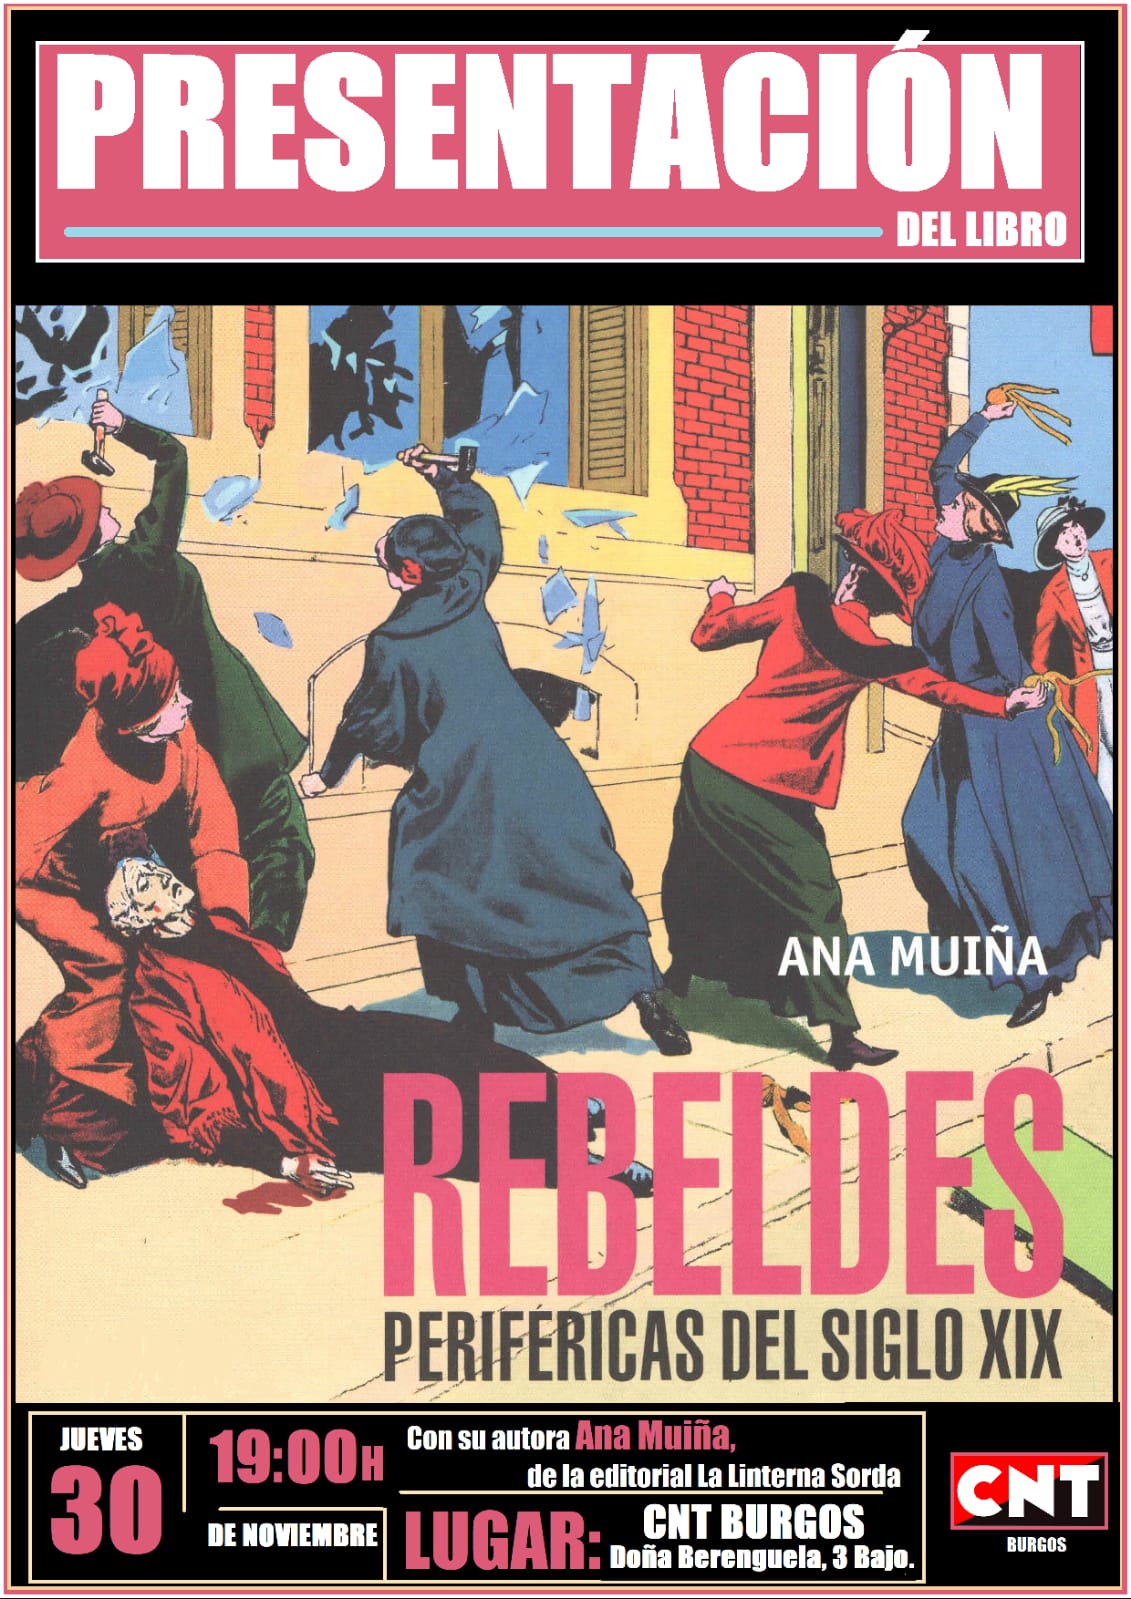 Presentación del libro «Rebeldes periféricas del siglo XIX»